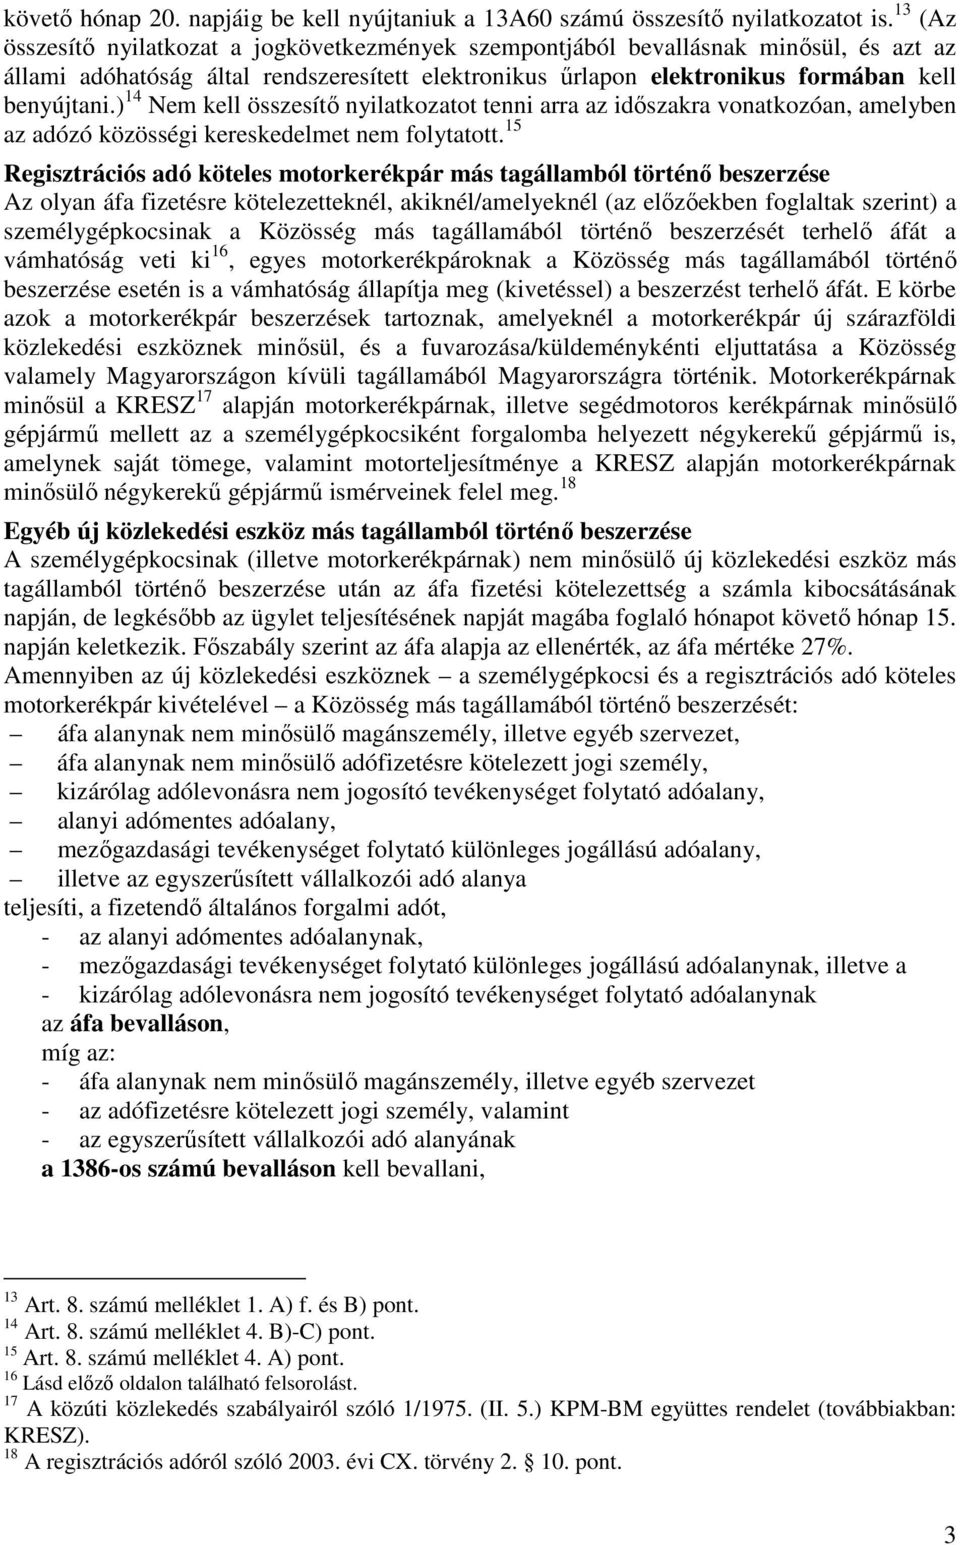 ) 14 Nem kell összesítı nyilatkozatot tenni arra az idıszakra vonatkozóan, amelyben az adózó közösségi kereskedelmet nem folytatott.